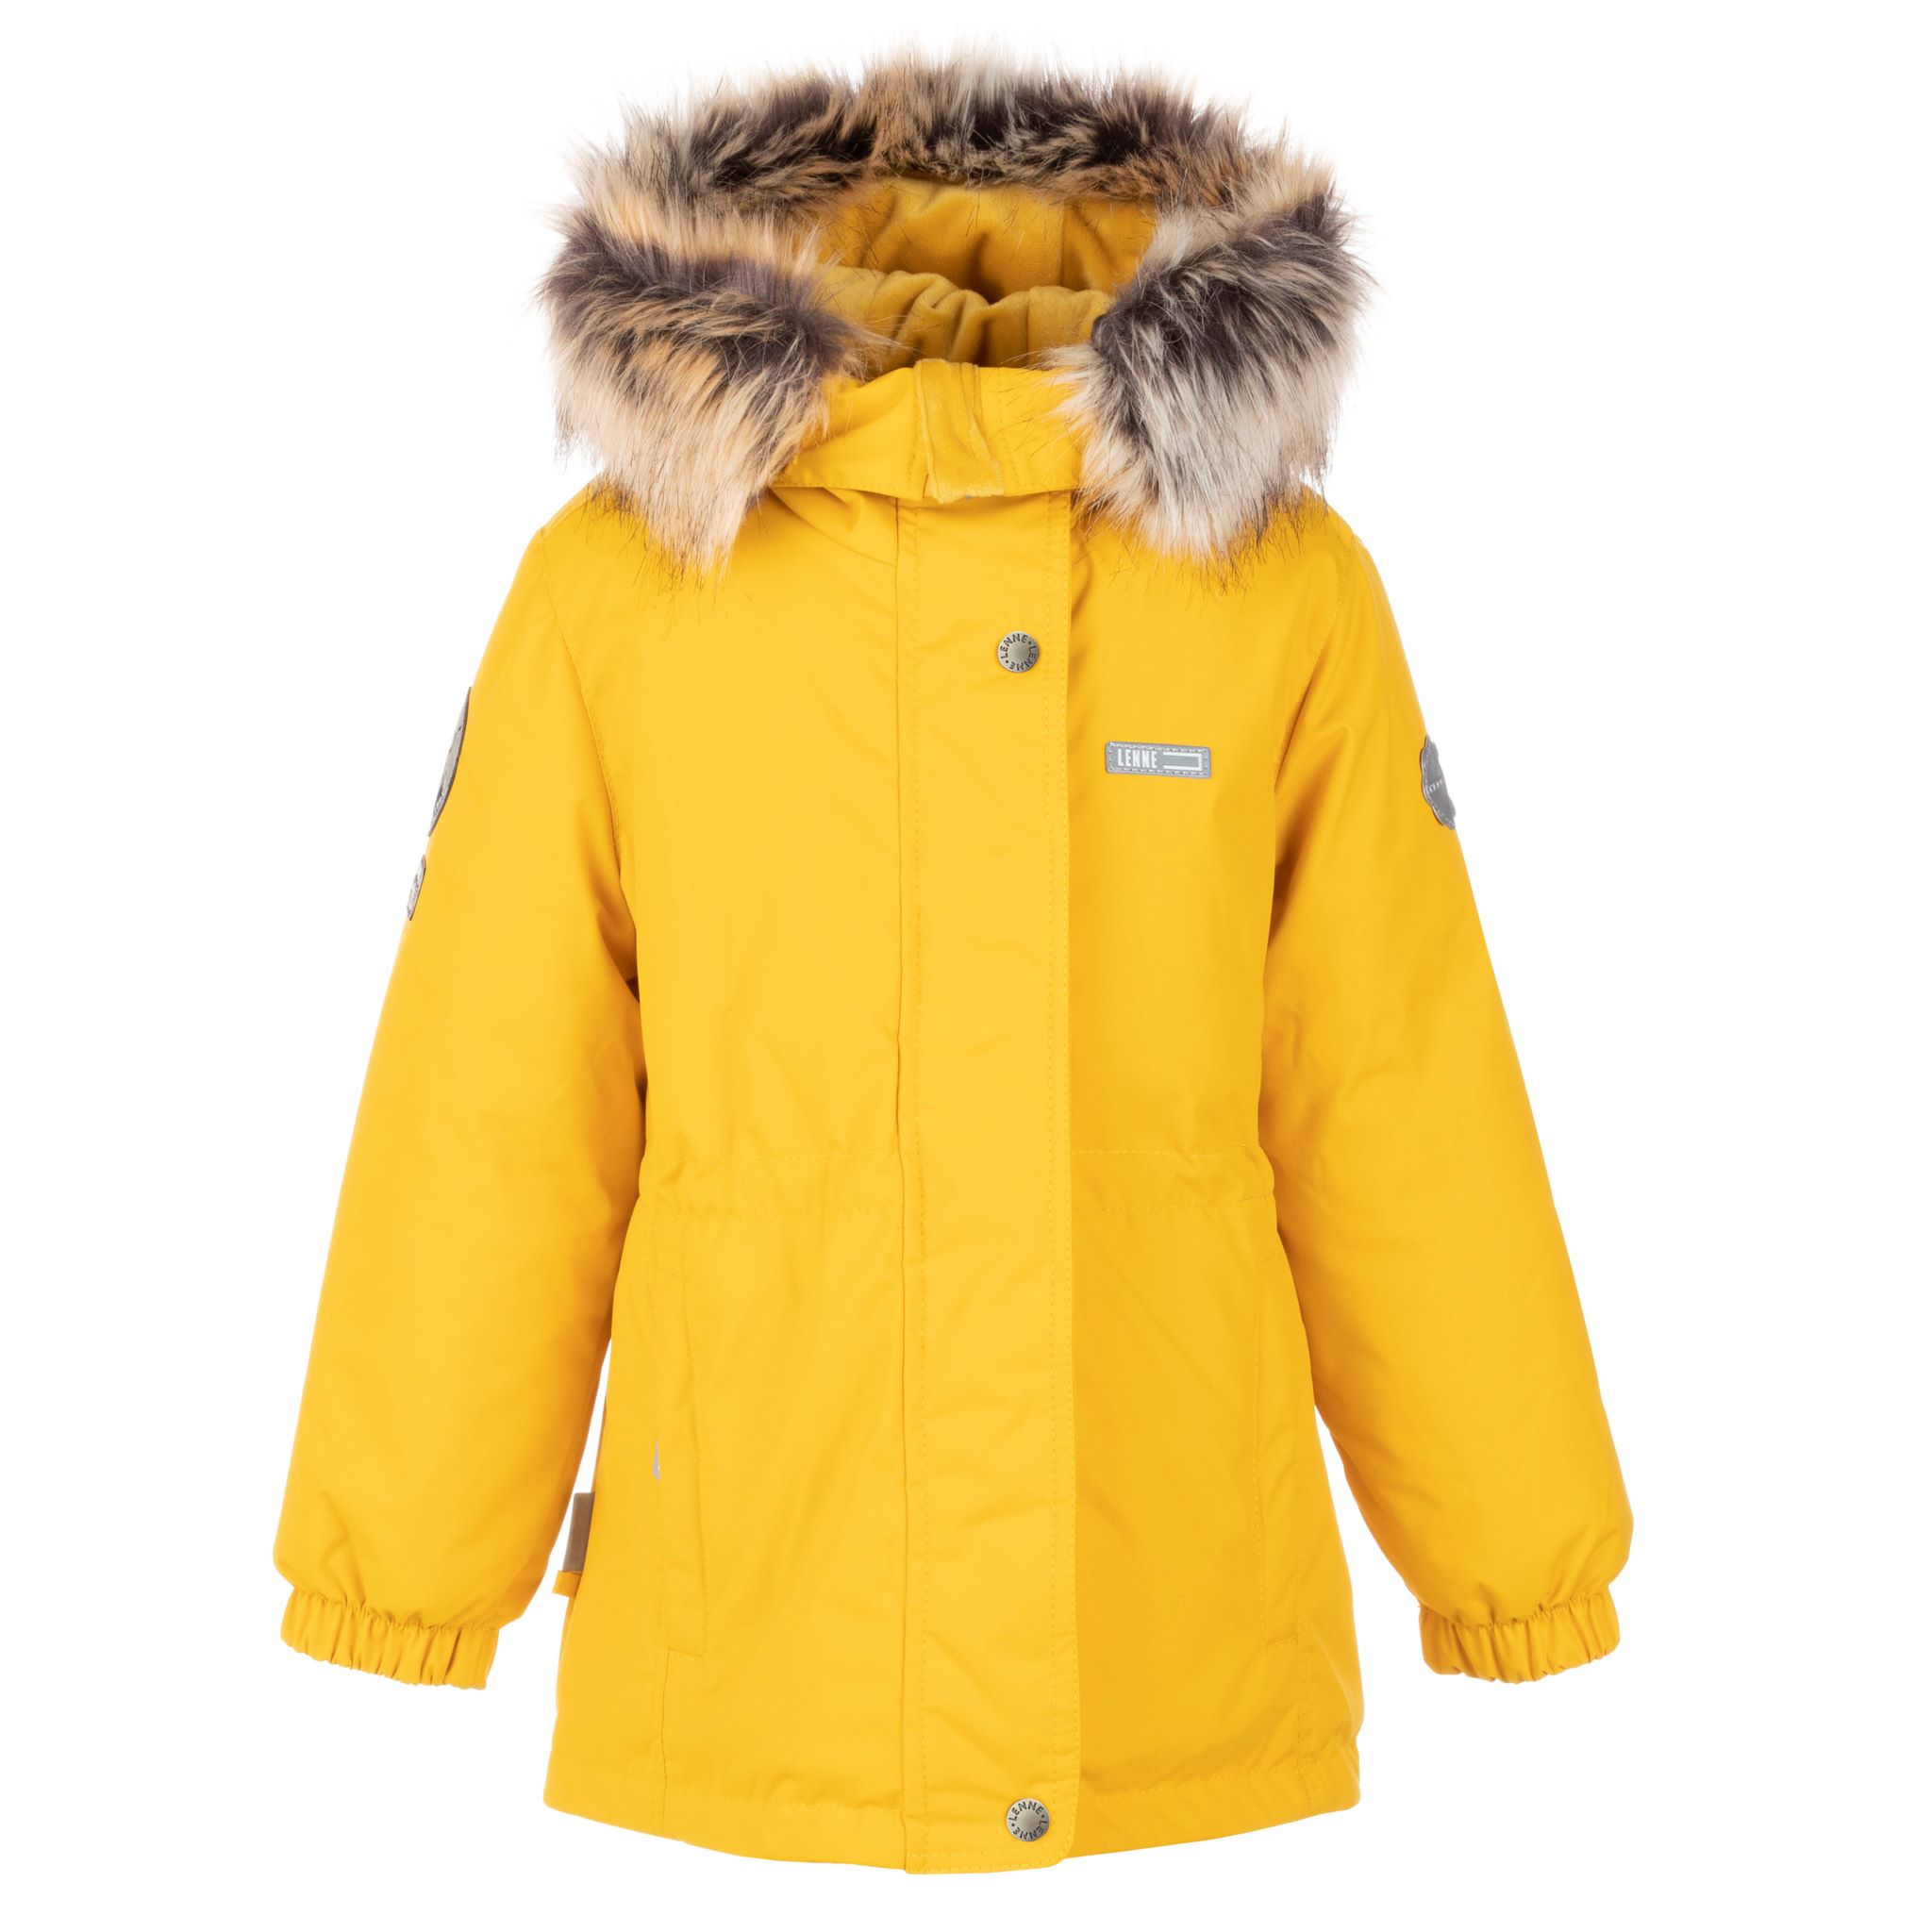 Lenne Maya удлиненная куртка парка для девочки 21330-108 жёлтая